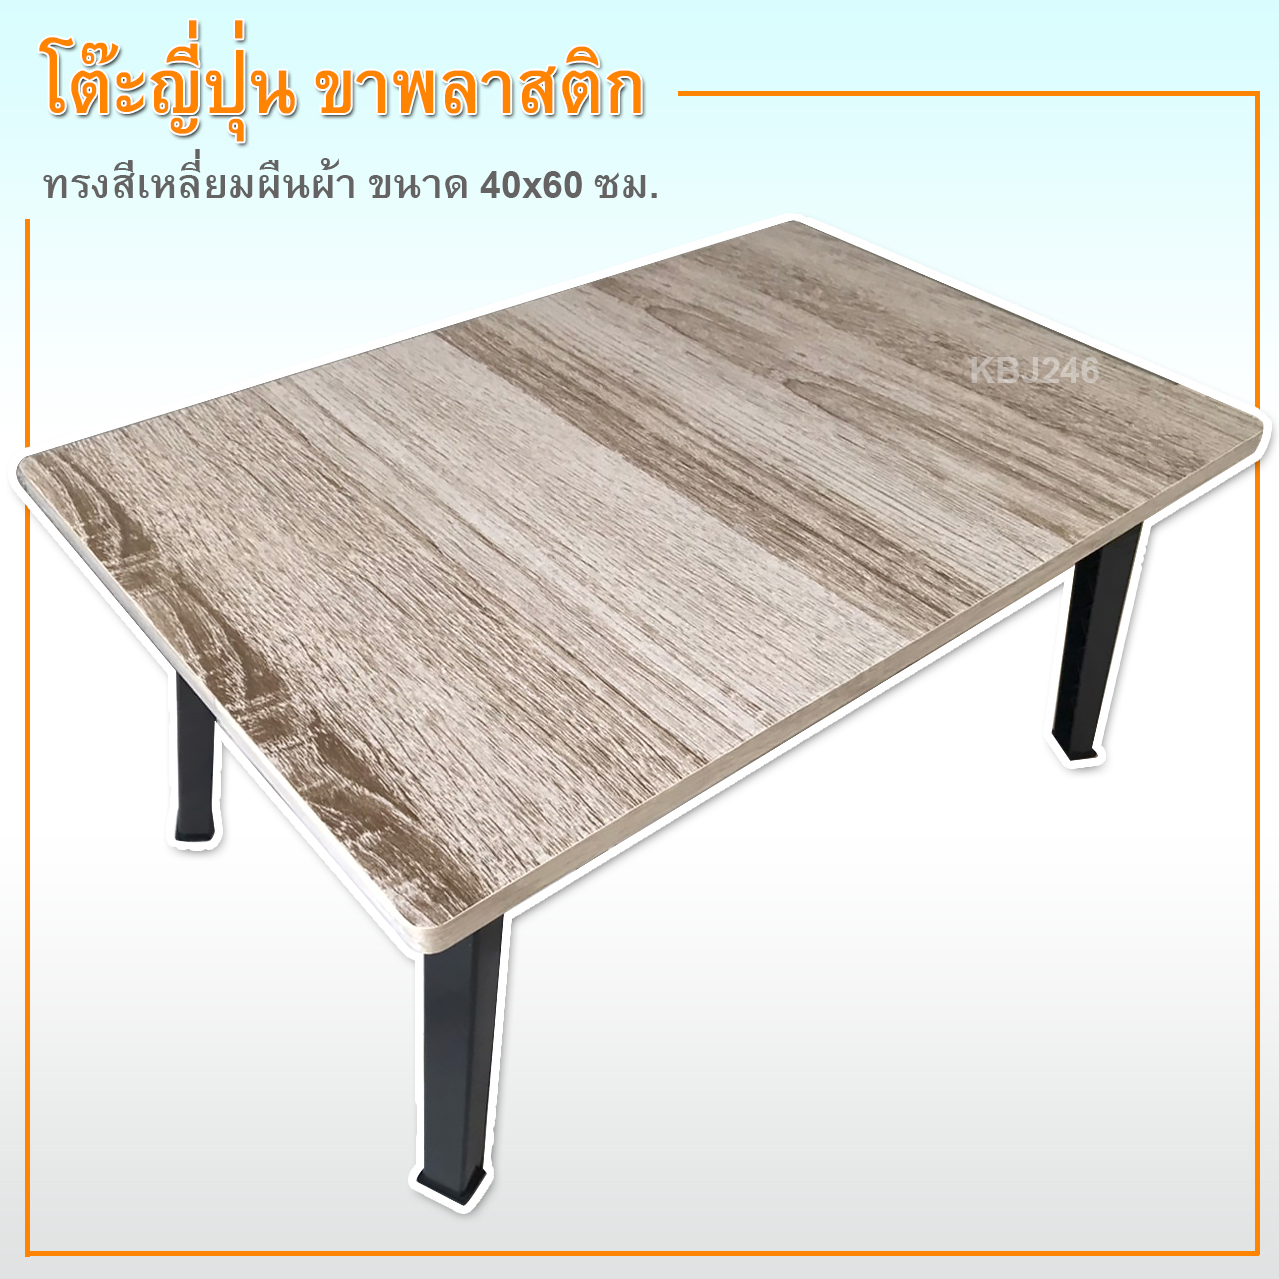 โต๊ะญี่ปุ่น ลายไม้ โต๊ะพับอเนกประสงค์พรีเมี่ยม ขนาด 40x60ซม(16x24นิ้ว)